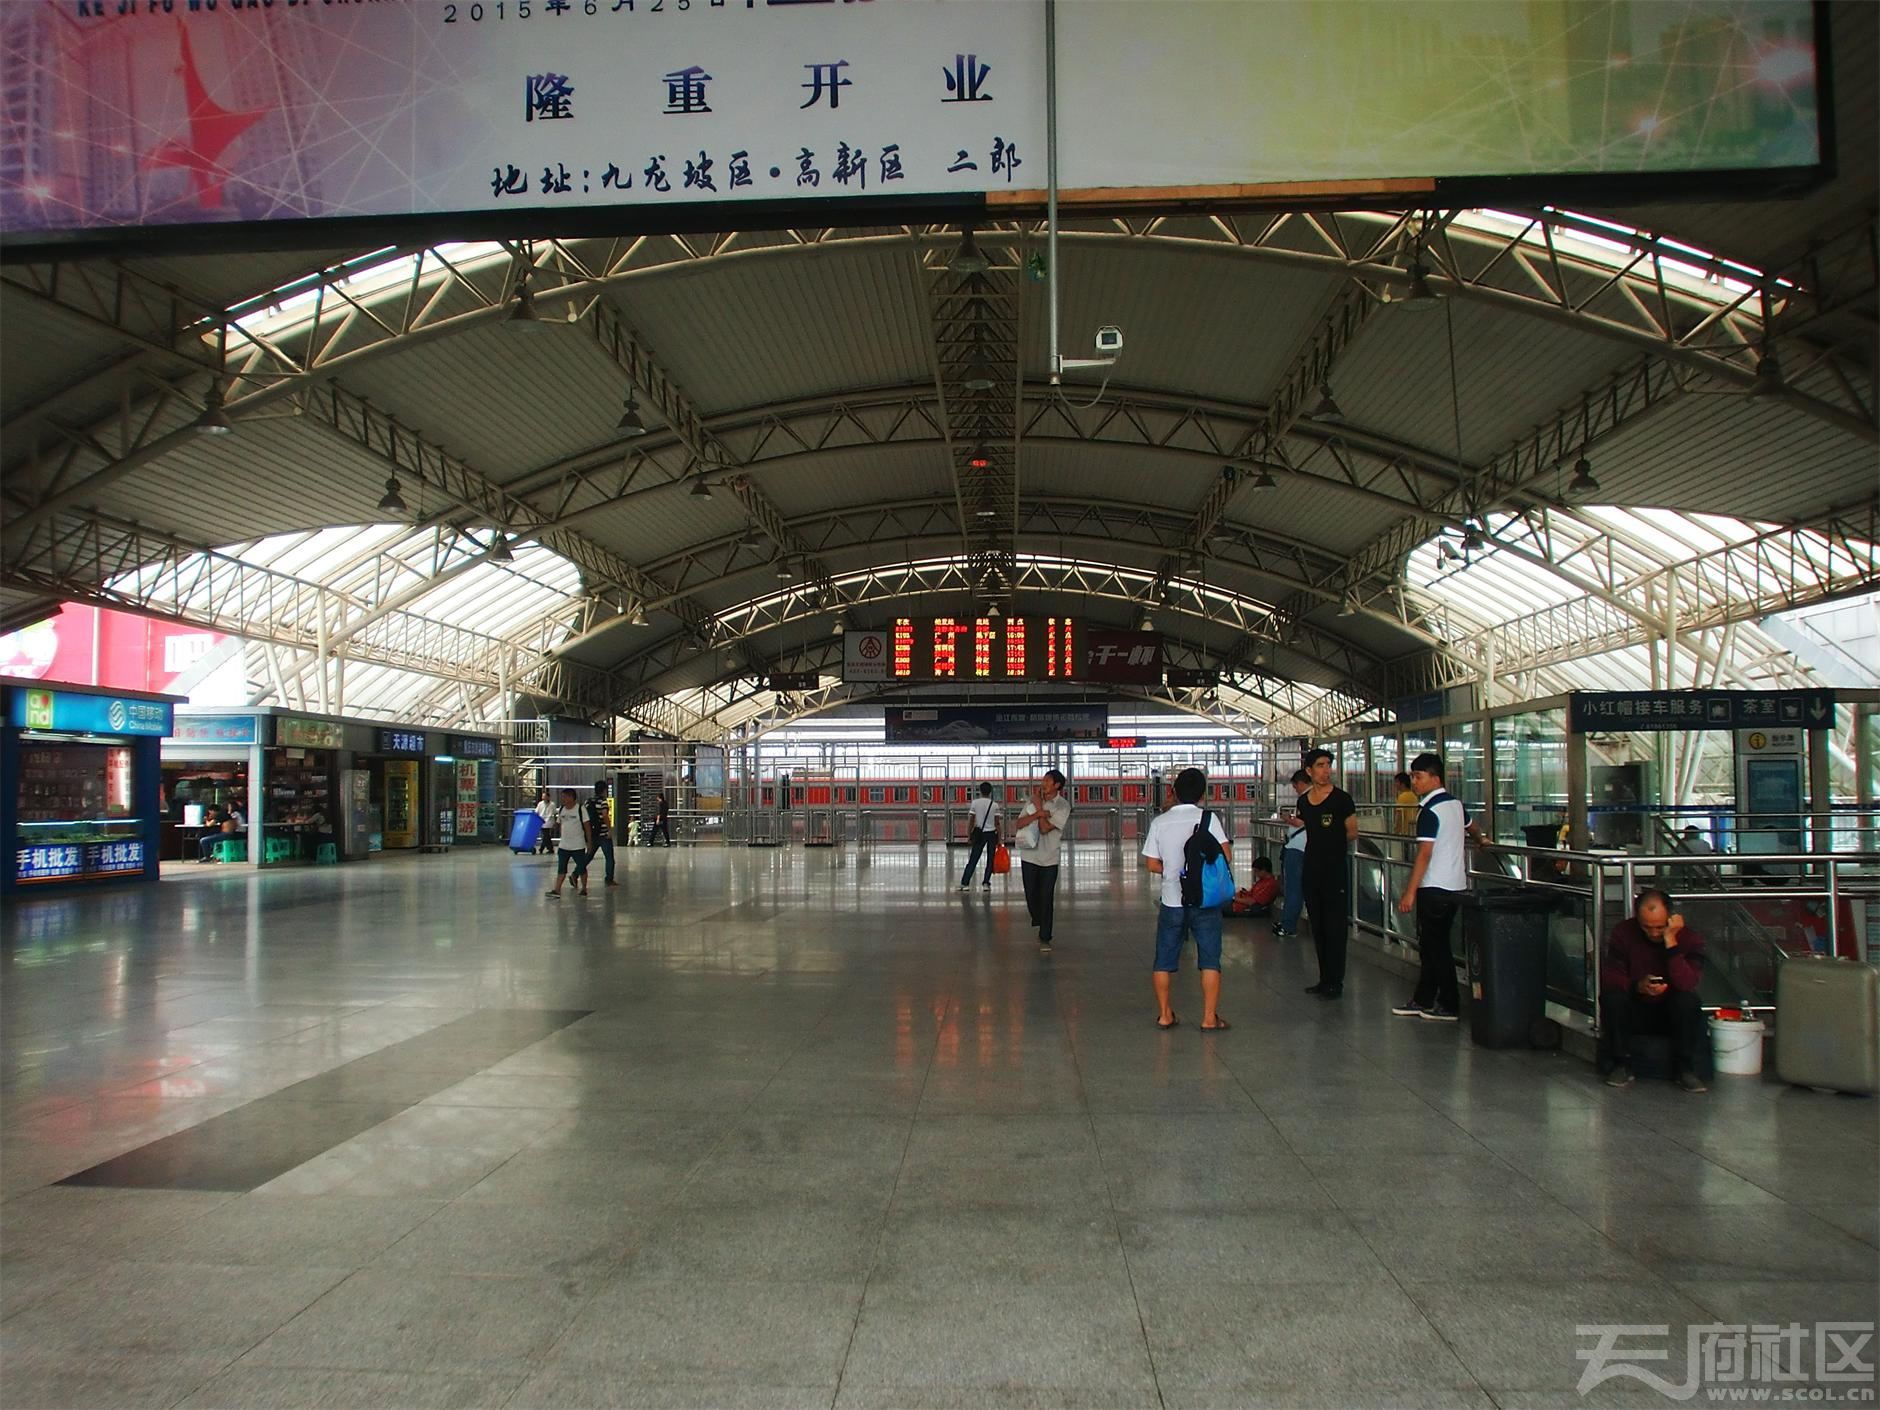 重庆北站 北广场---南广场：最新拍 108张实景图片 详细解读。( 铁路爱好者进来看) - 城市论坛 - 天府社区